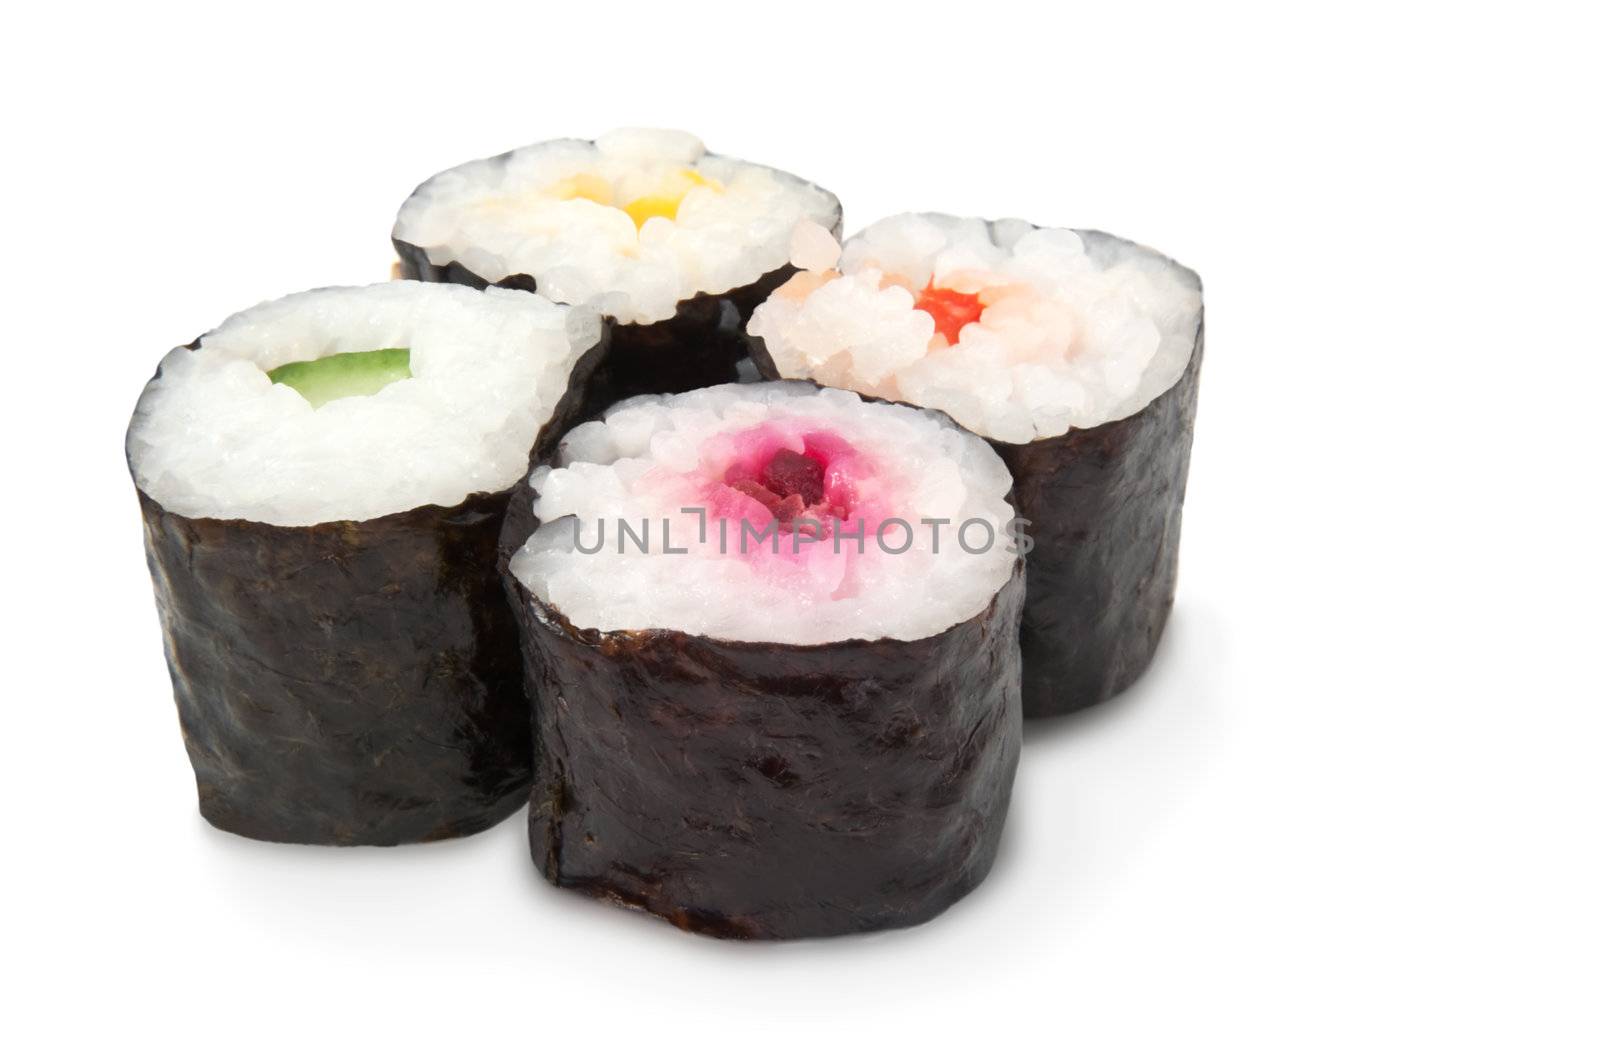 Four fresh Maki rolls arranged over white